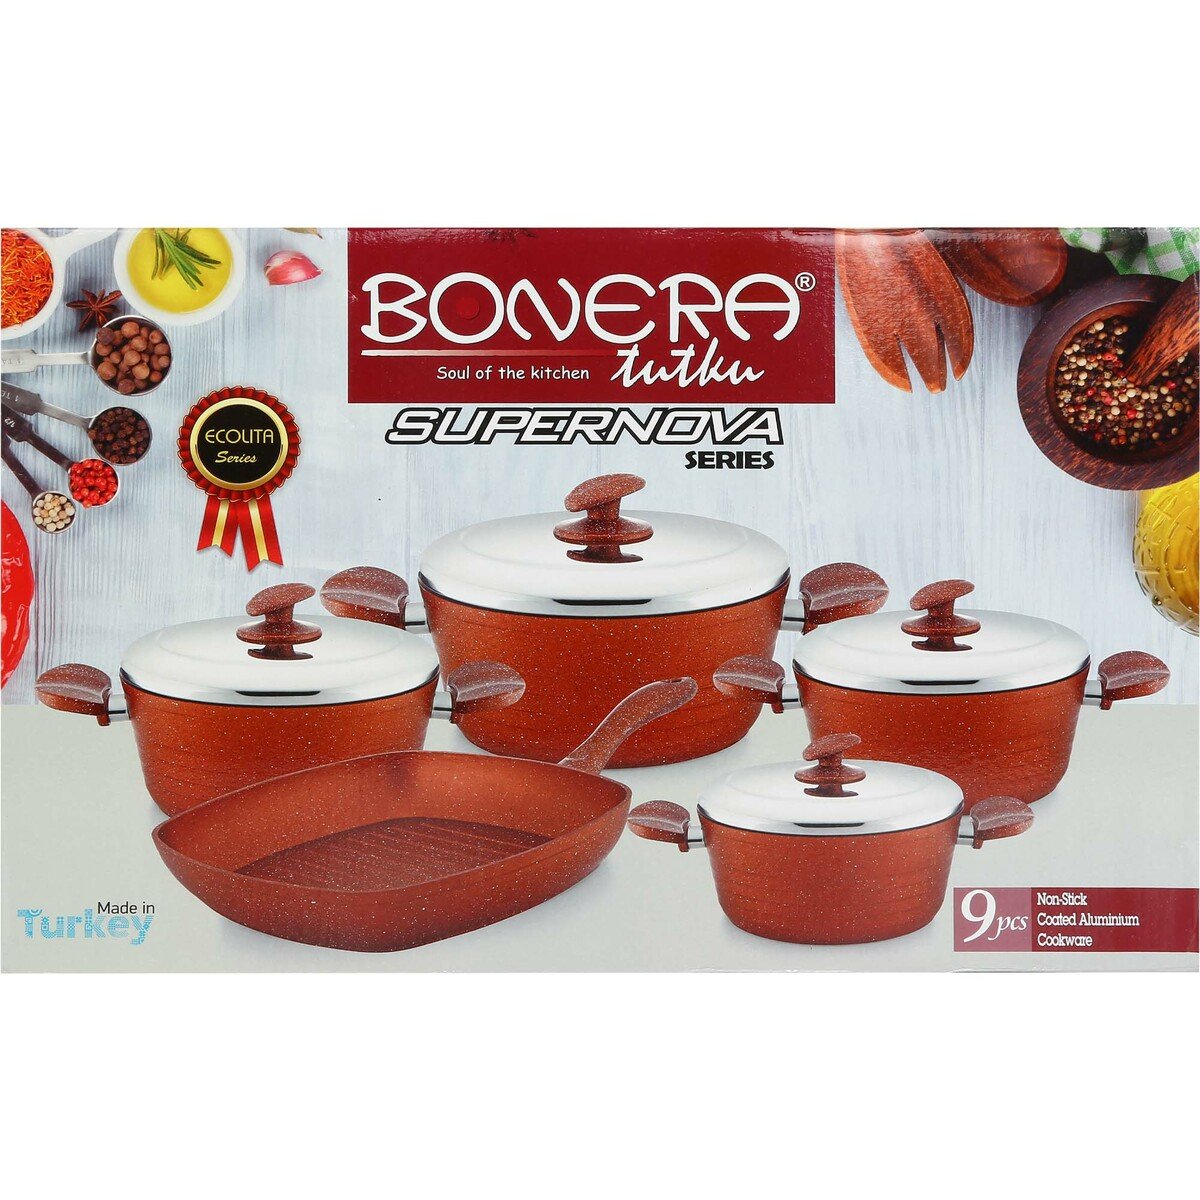 Bonera Cookware Set-Granite SNV 9pcs Assorted Colors